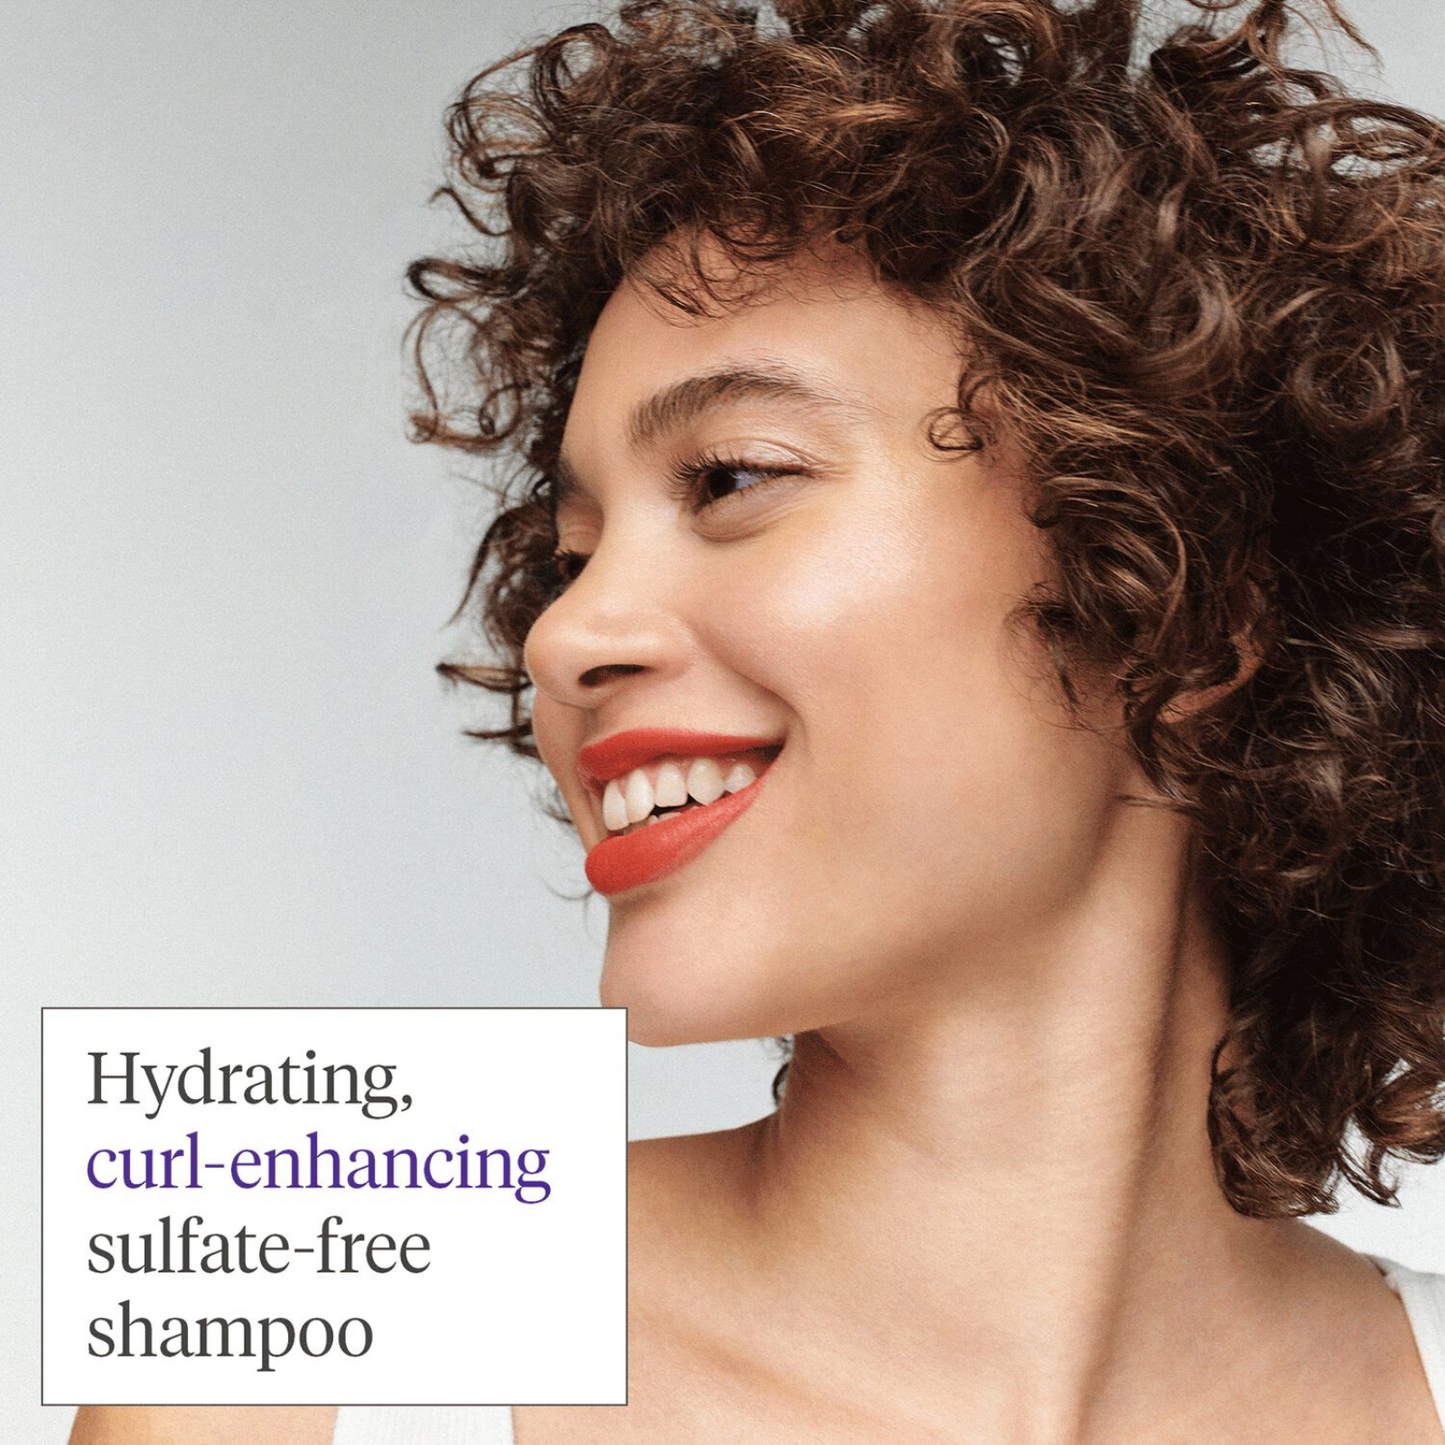 Briogeo - Curl Charisma Rice Amino + Avocado Hydrating Shampoo